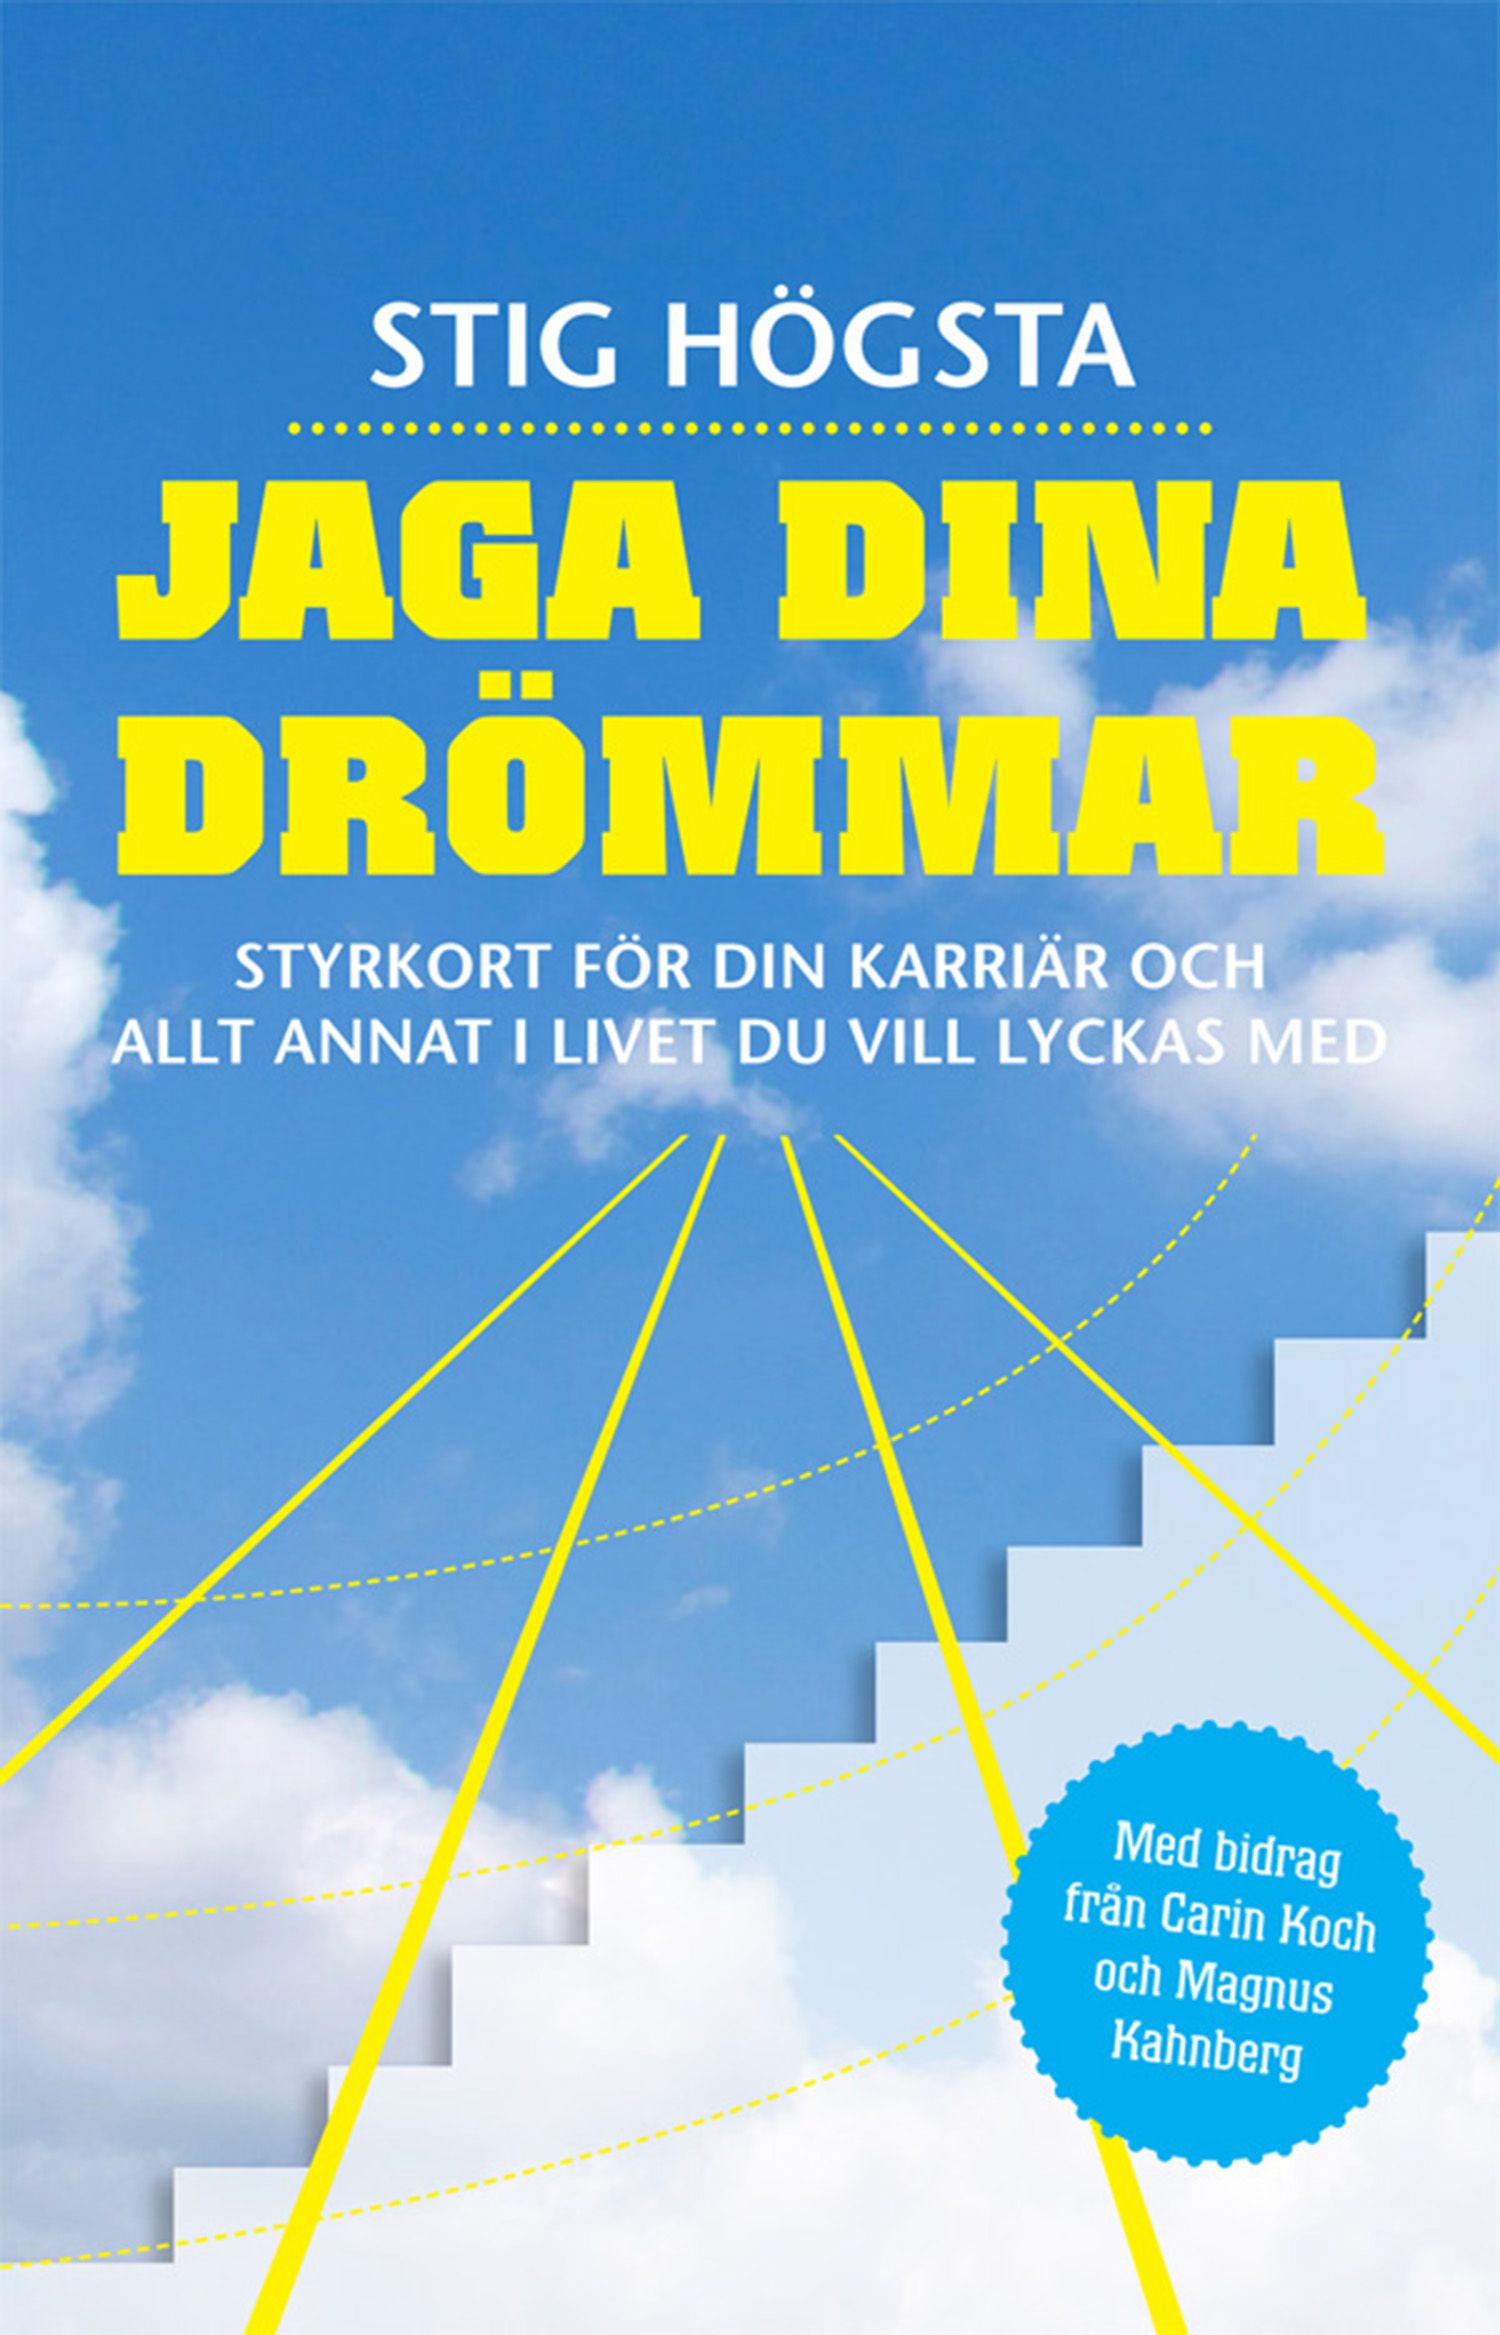 Jaga dina drömmar : Styrkort för din karriär och allt annat i livet du vill lyckas med, eBook by Stig Högsta